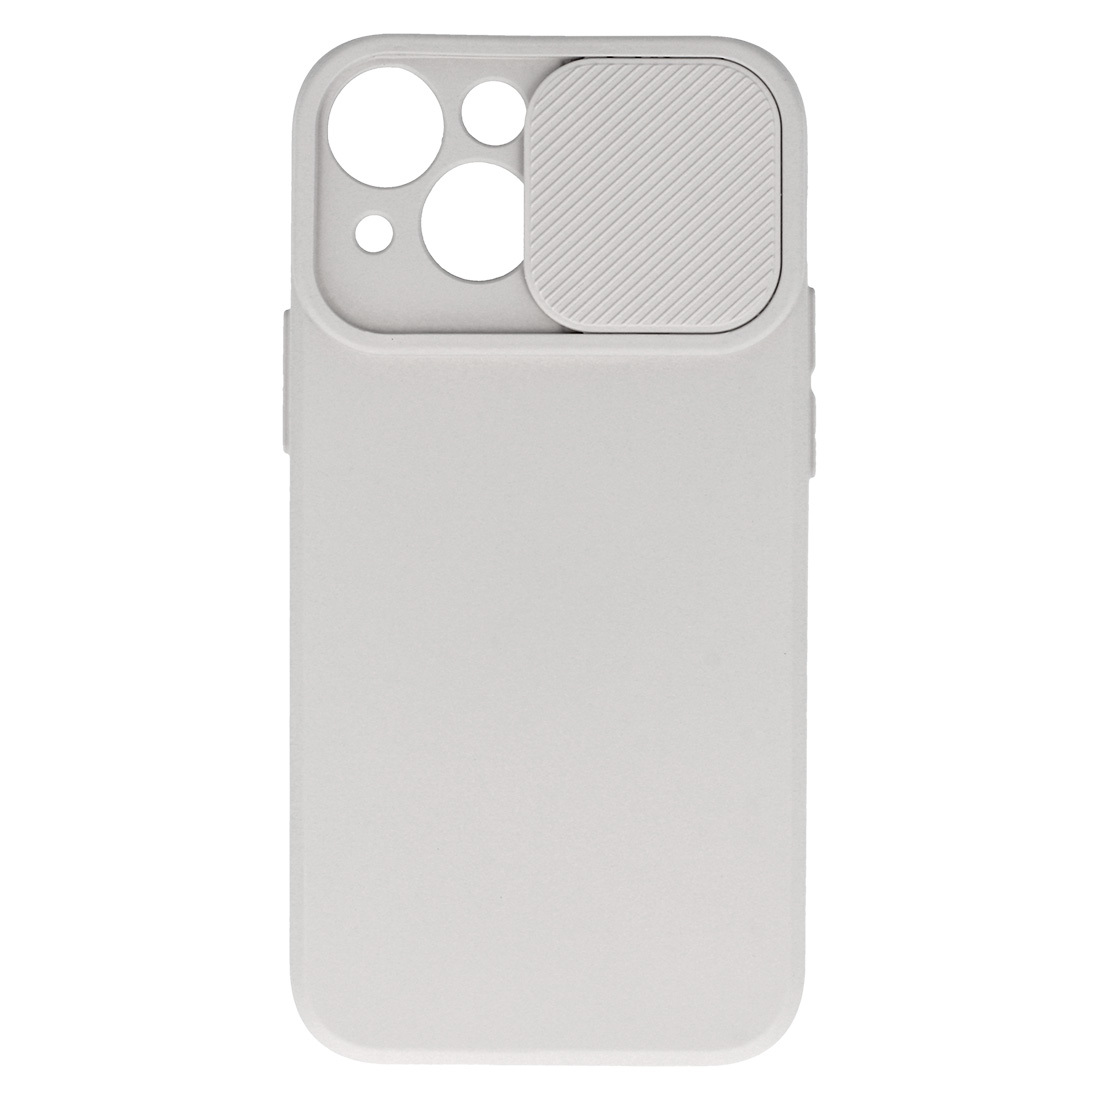 Pokrowiec etui z elastycznego TPU Camshield Soft Case beowe APPLE iPhone 11 Pro Max / 4